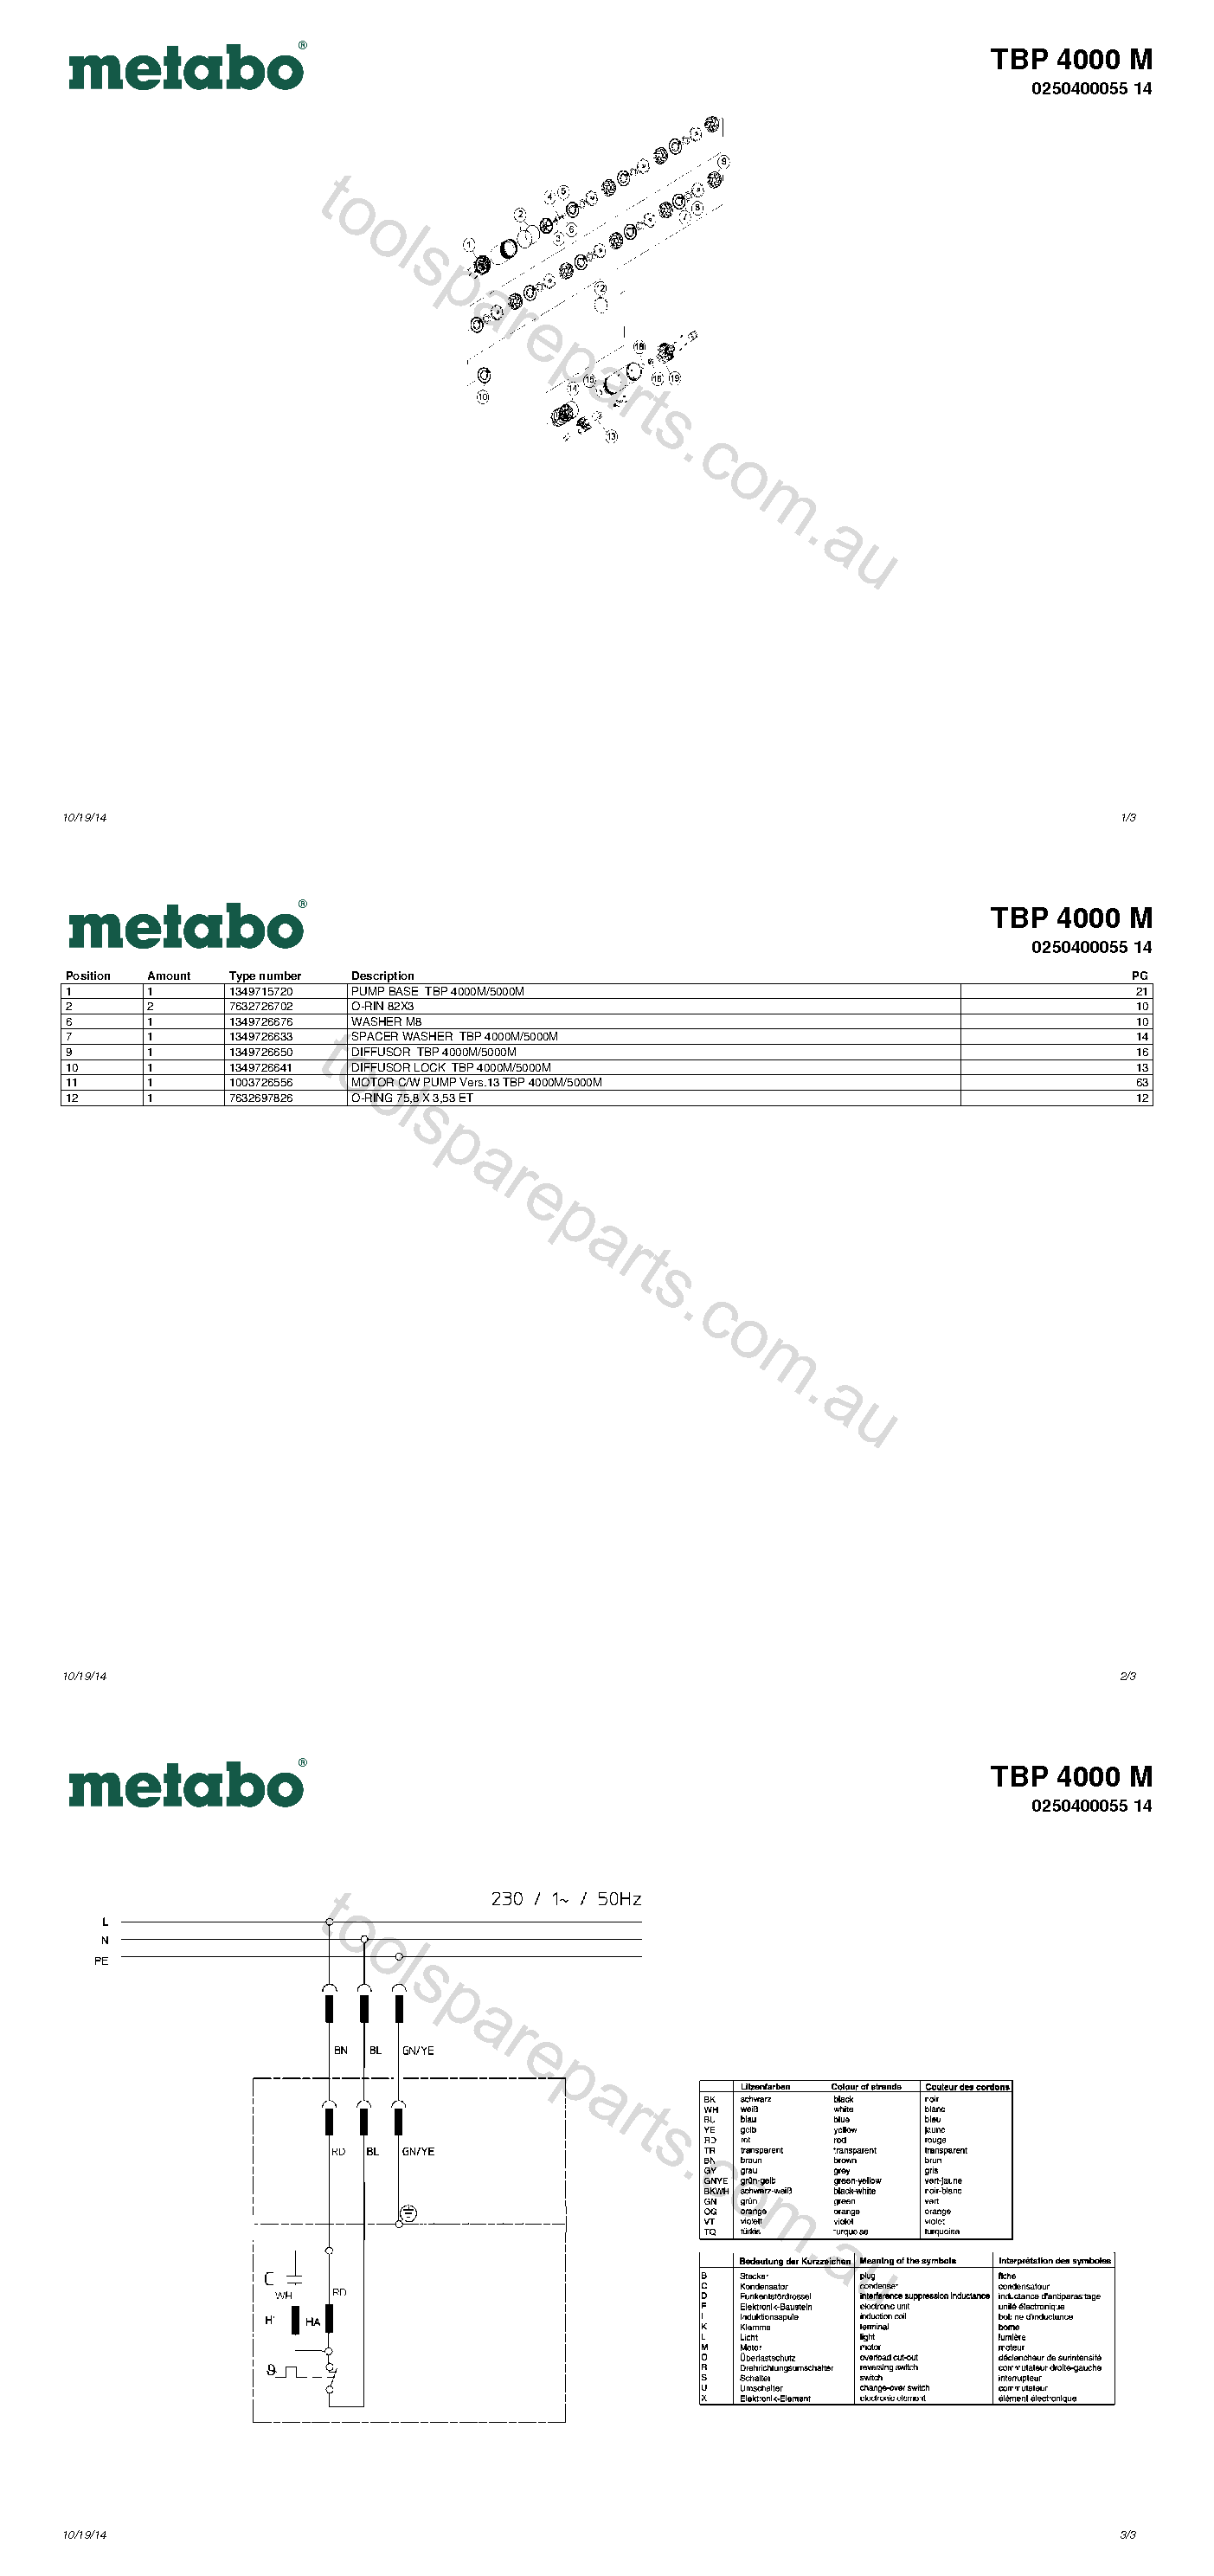 Metabo TBP 4000 M 0250400055 14  Diagram 1